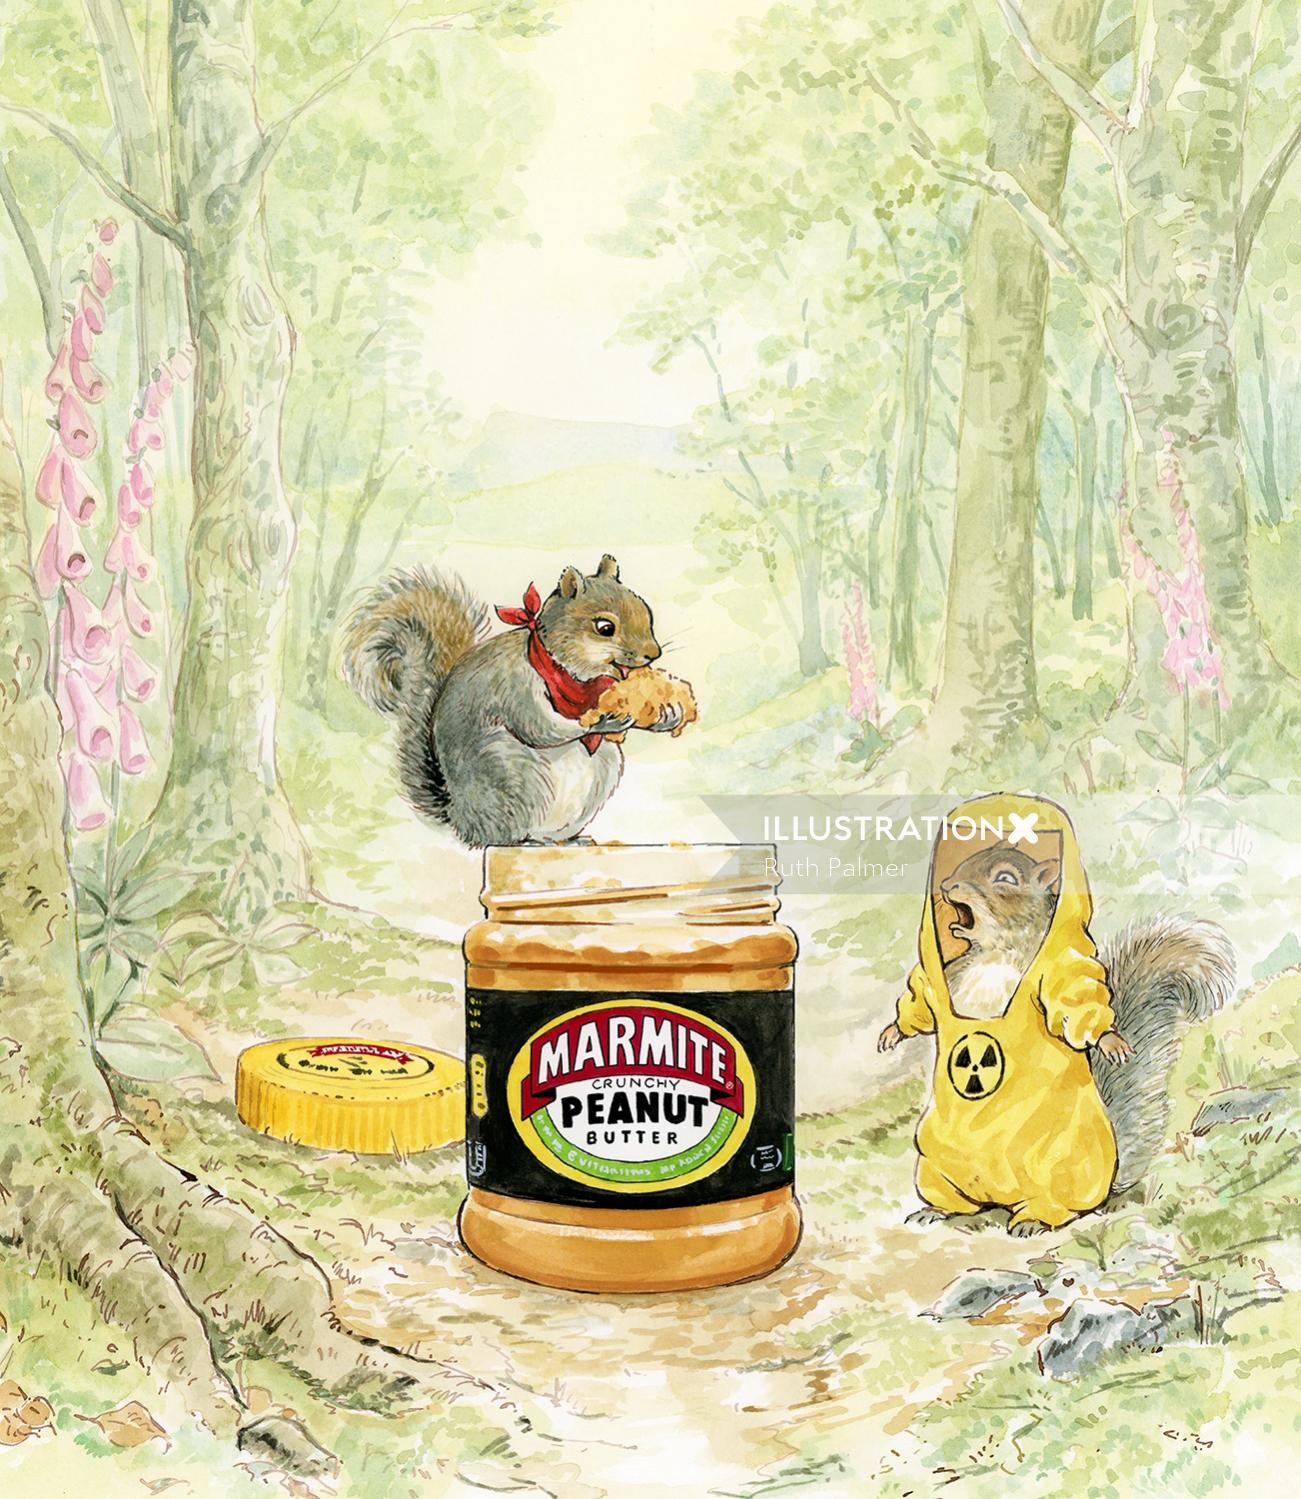 Ilustração publicitária de manteiga de amendoim Marmite